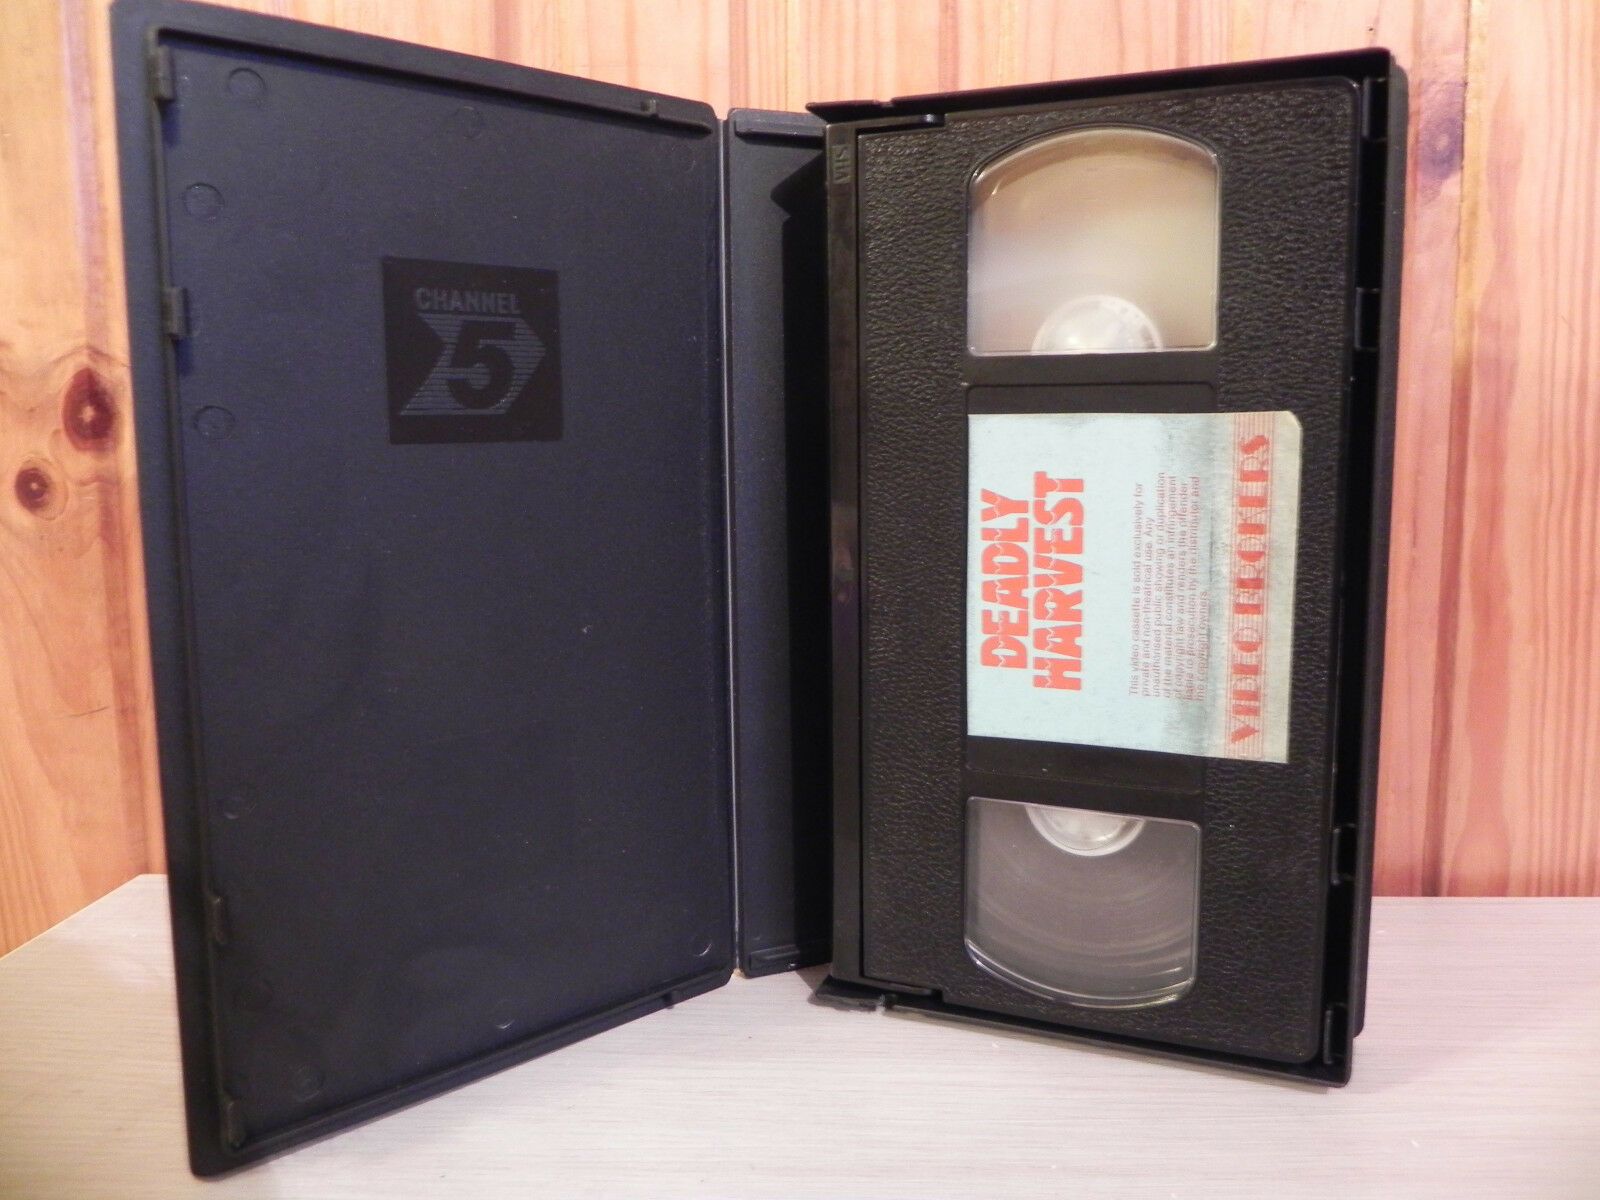 DEADLY HARVEST - Futuristic Sci-Fi - Small Box - Pre-Cert - Video Bookers - VHS-